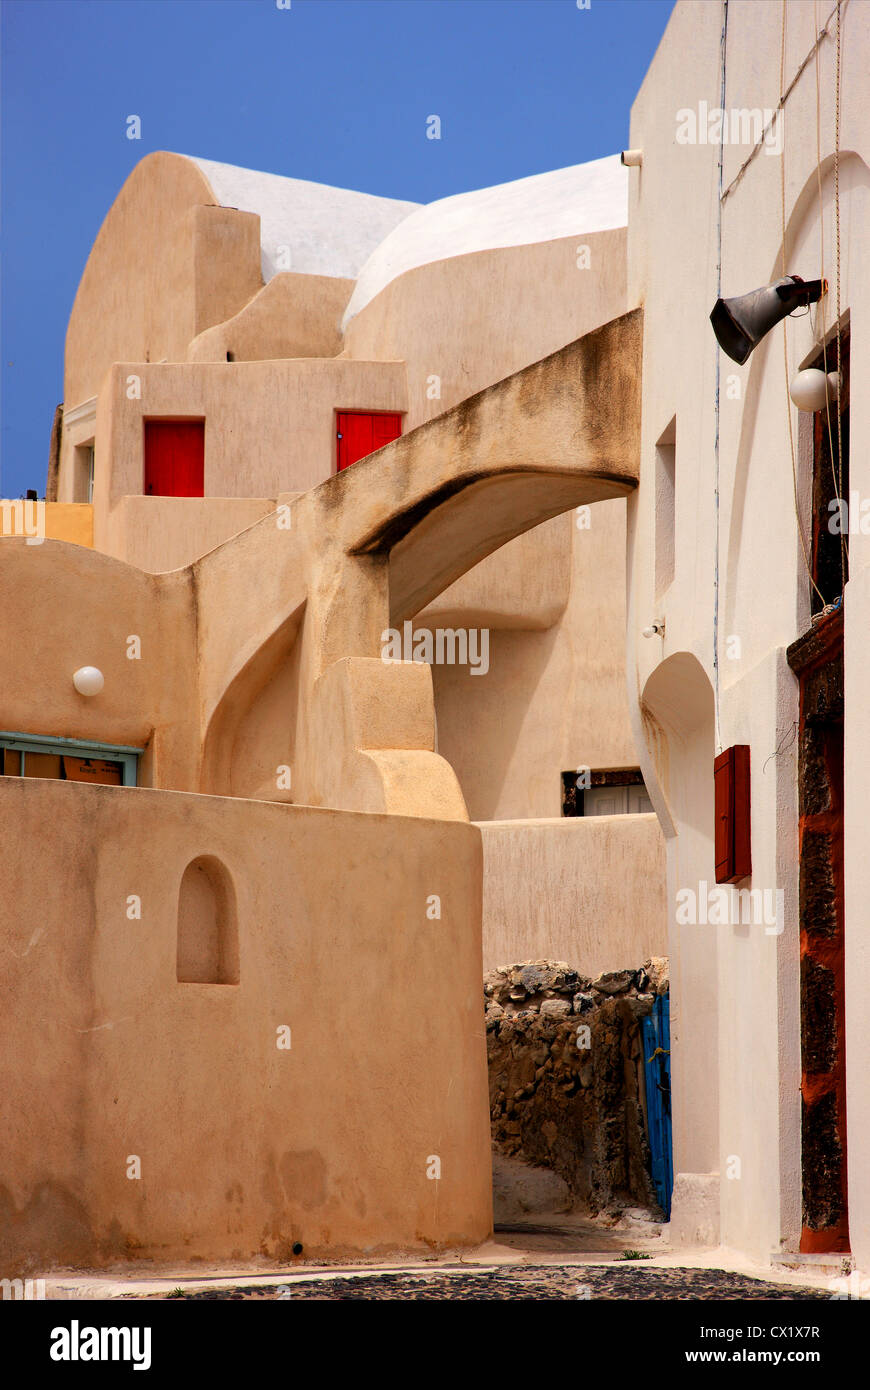 La sua architettura impressionante nella parte vecchia del villaggio Embourios, nell'entroterra dell'isola di Santorini, Cicladi Grecia Foto Stock